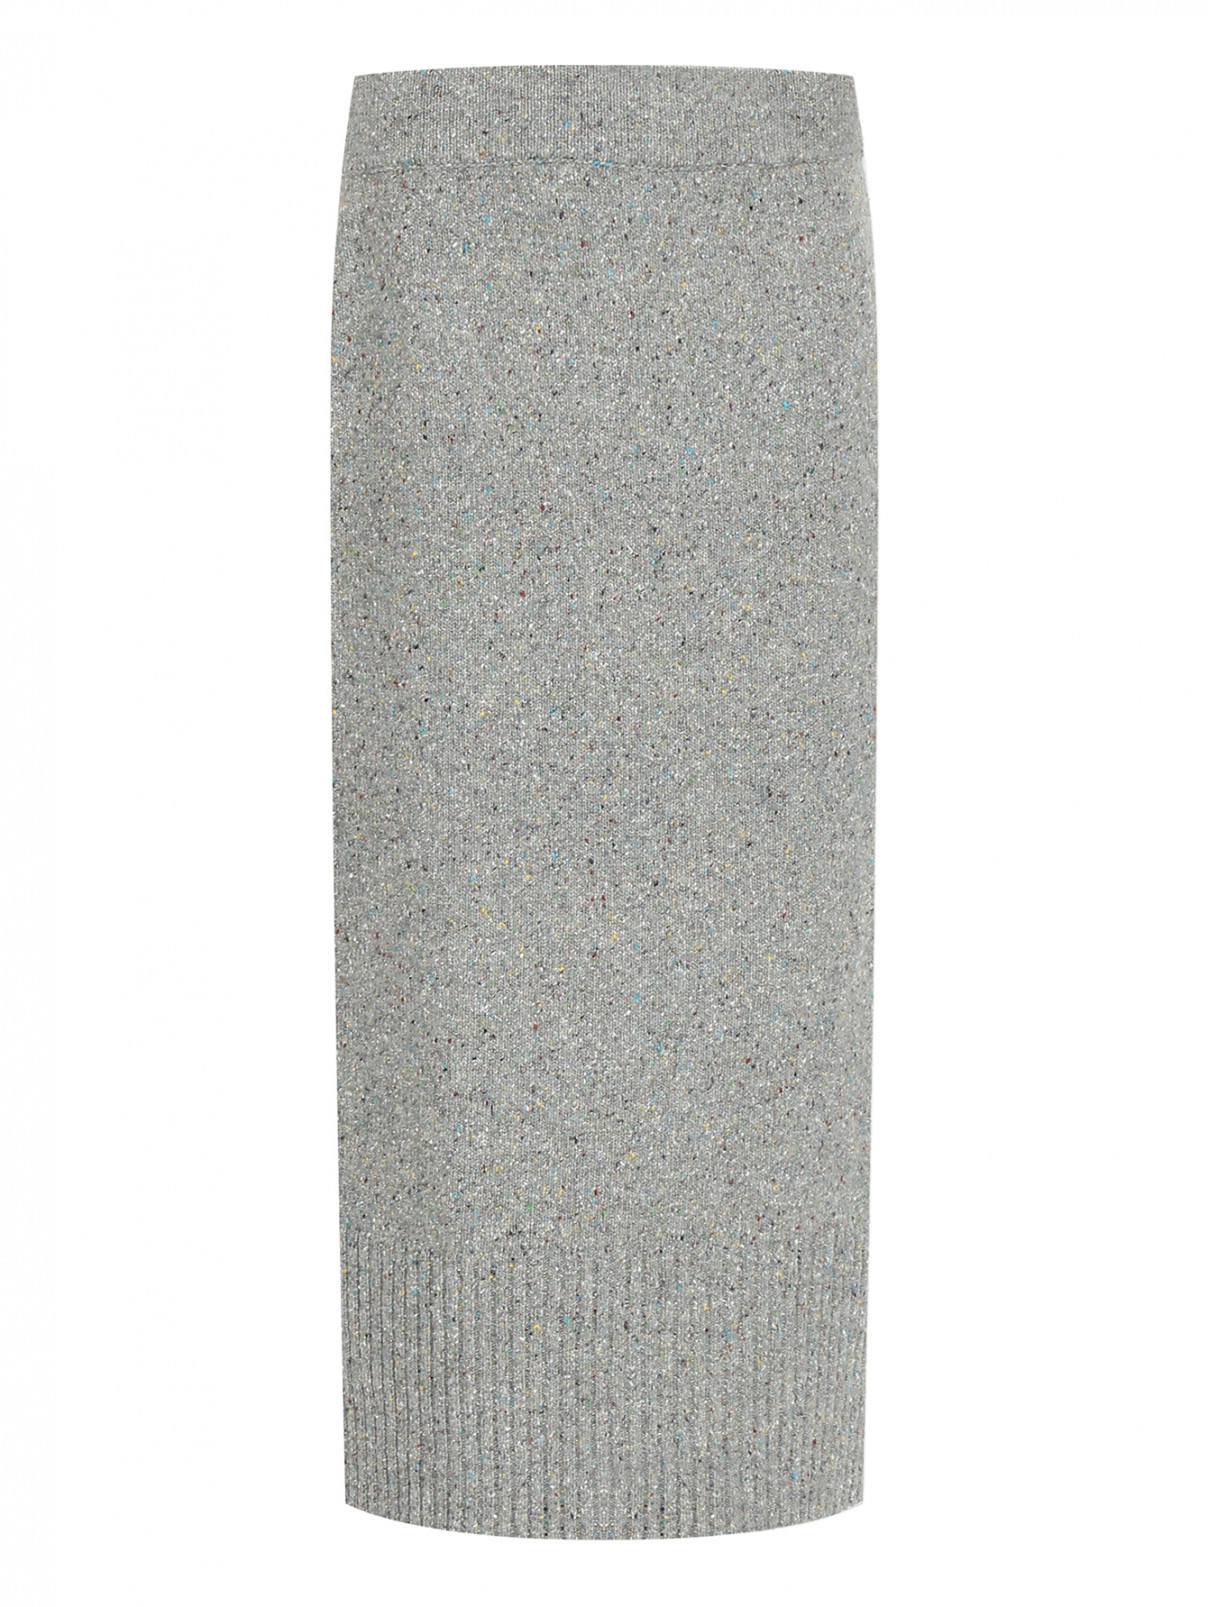 Трикотажная юбка на резинке Weekend Max Mara  –  Общий вид  – Цвет:  Серый